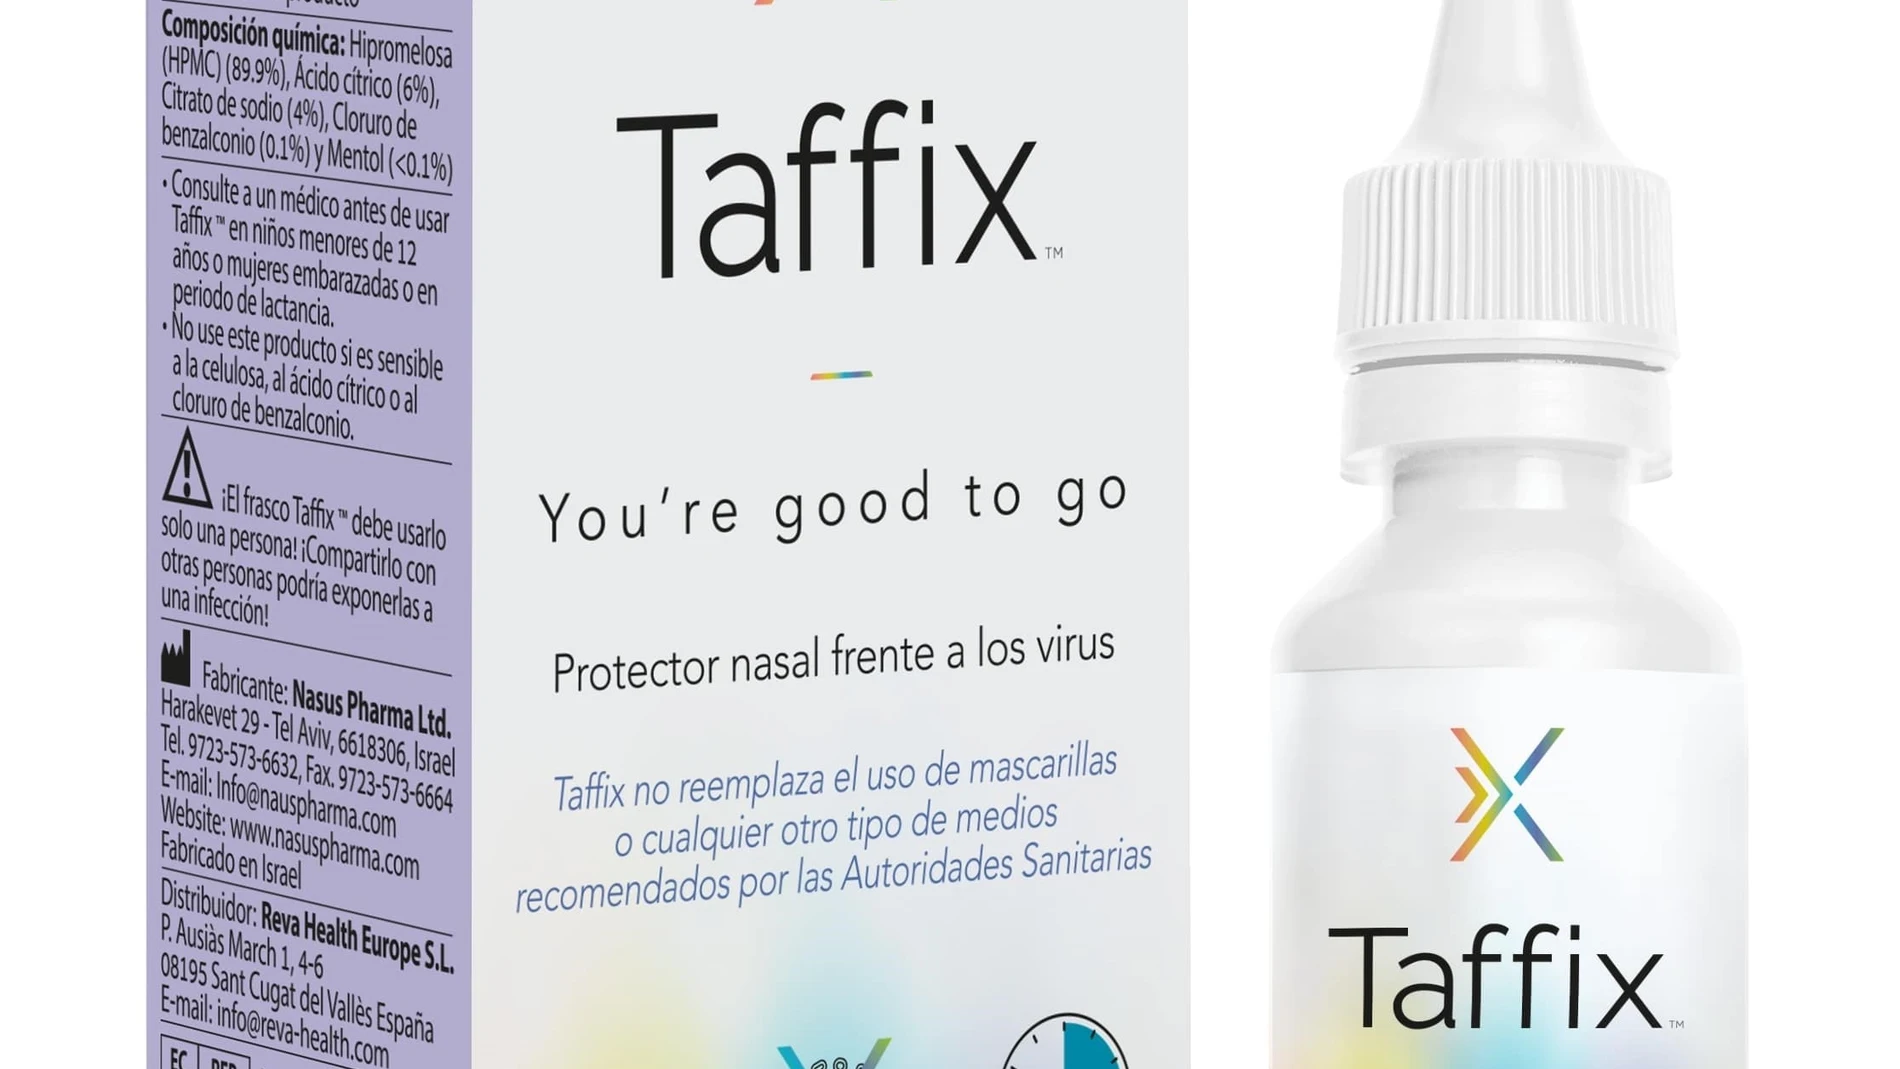 Taffix es un aerosol nasal en polvo que promete bloquear hasta el 99,99% de los virus respiratorios, incluyendo el SARS-CoV-2.